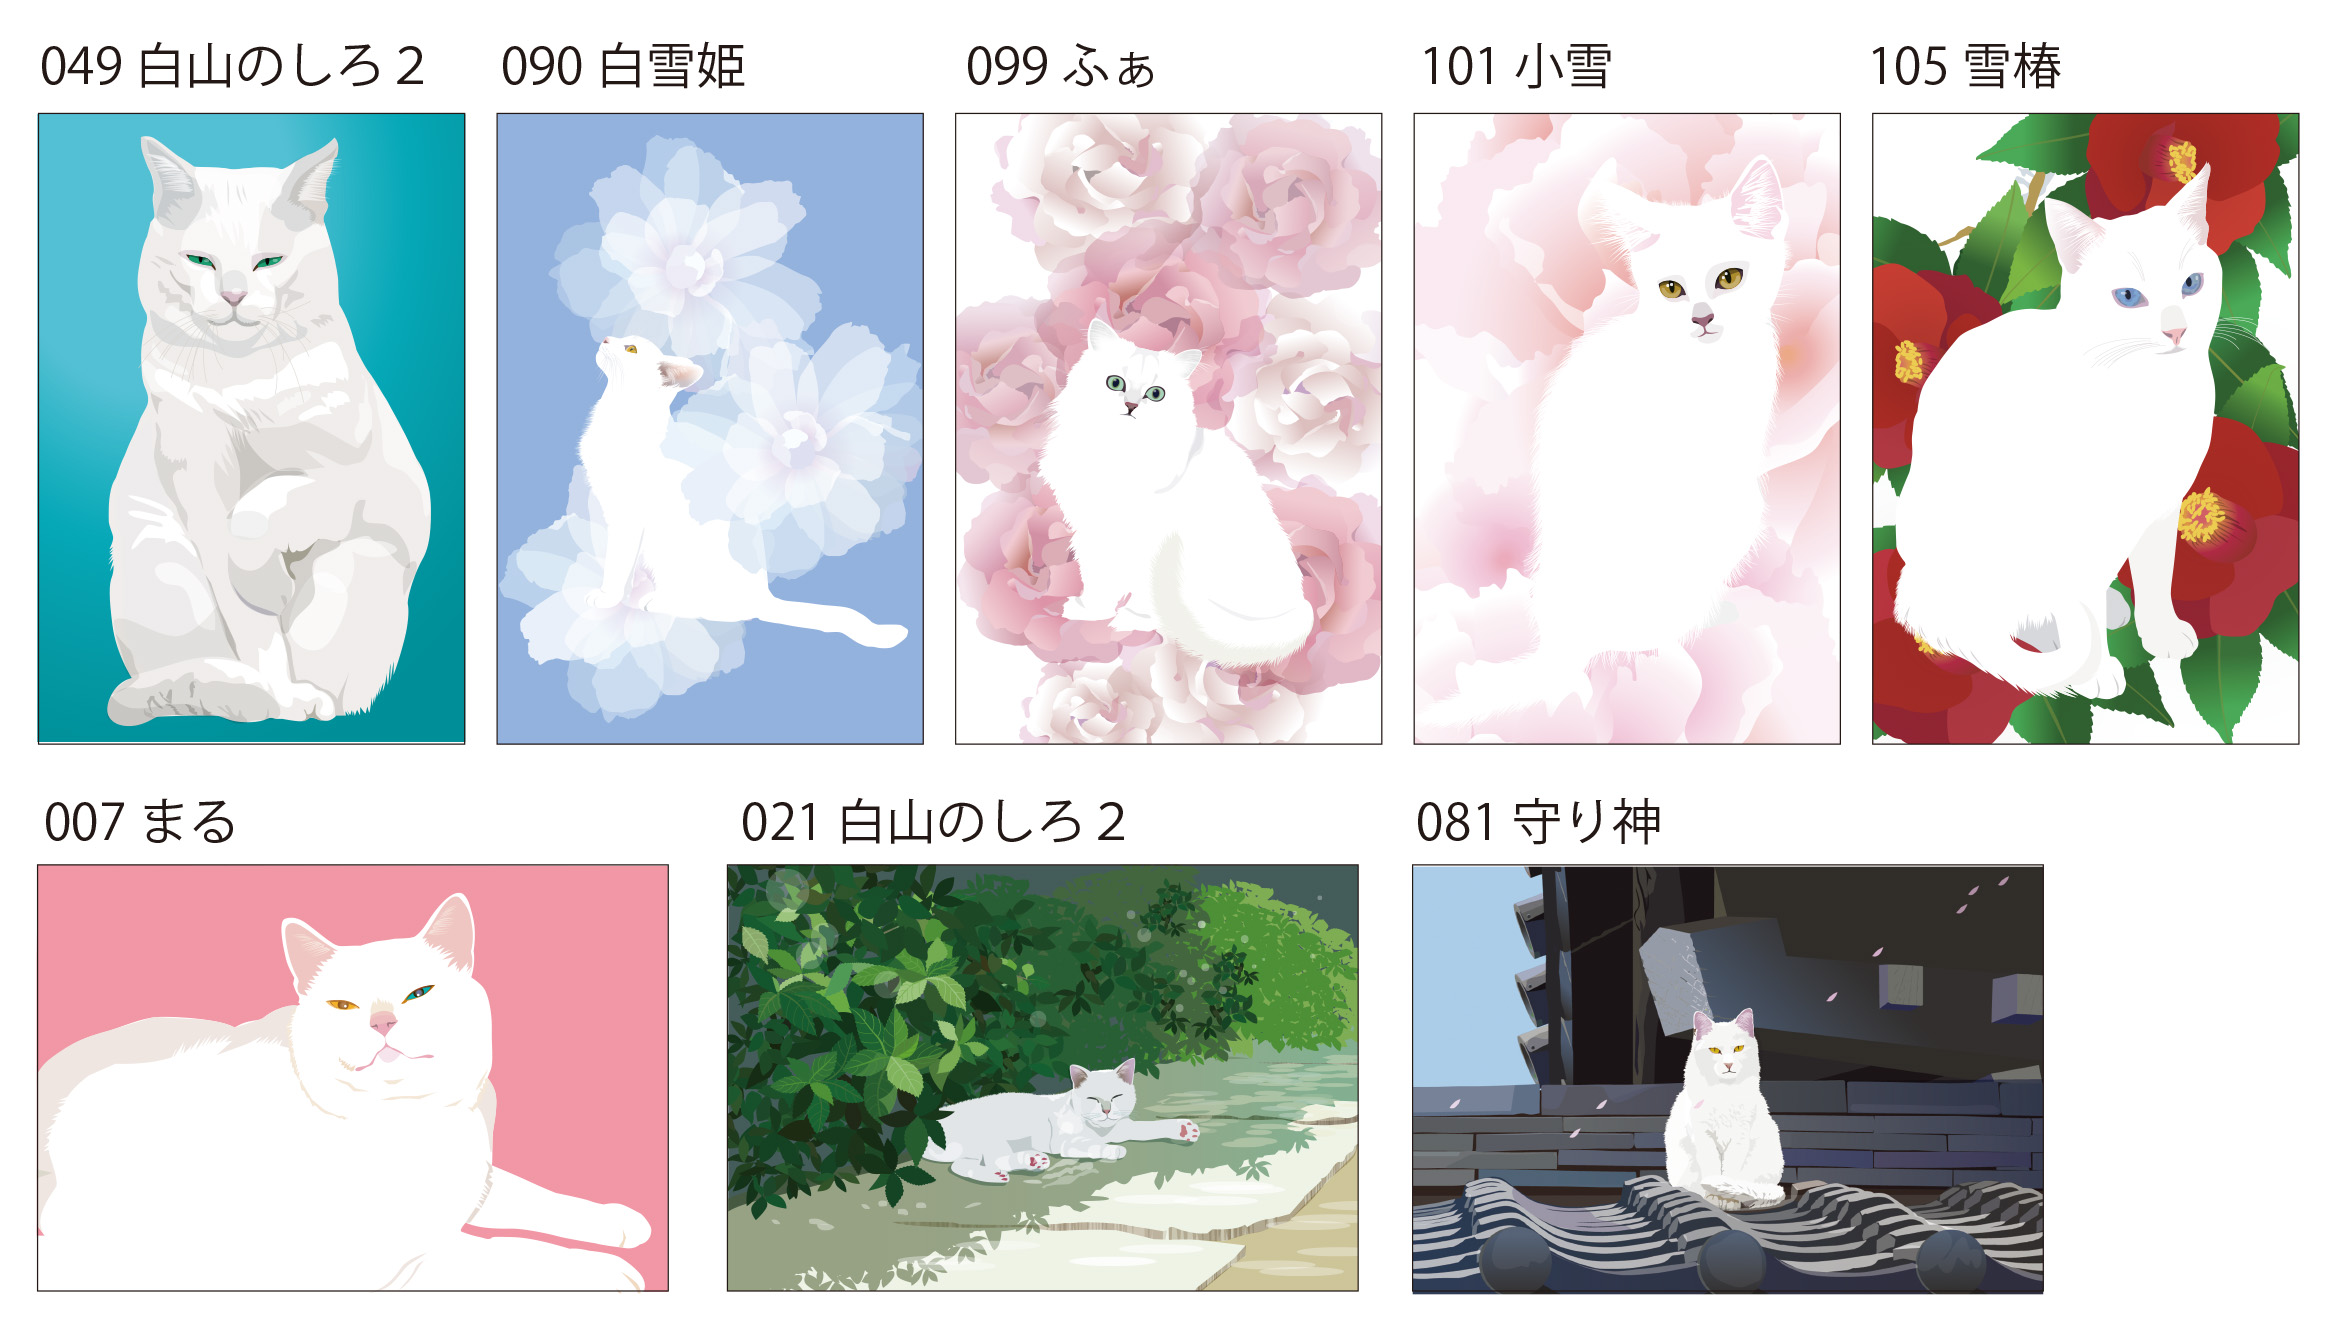 白猫ポストカード8枚セット Iichi ハンドメイド クラフト作品 手仕事品の通販